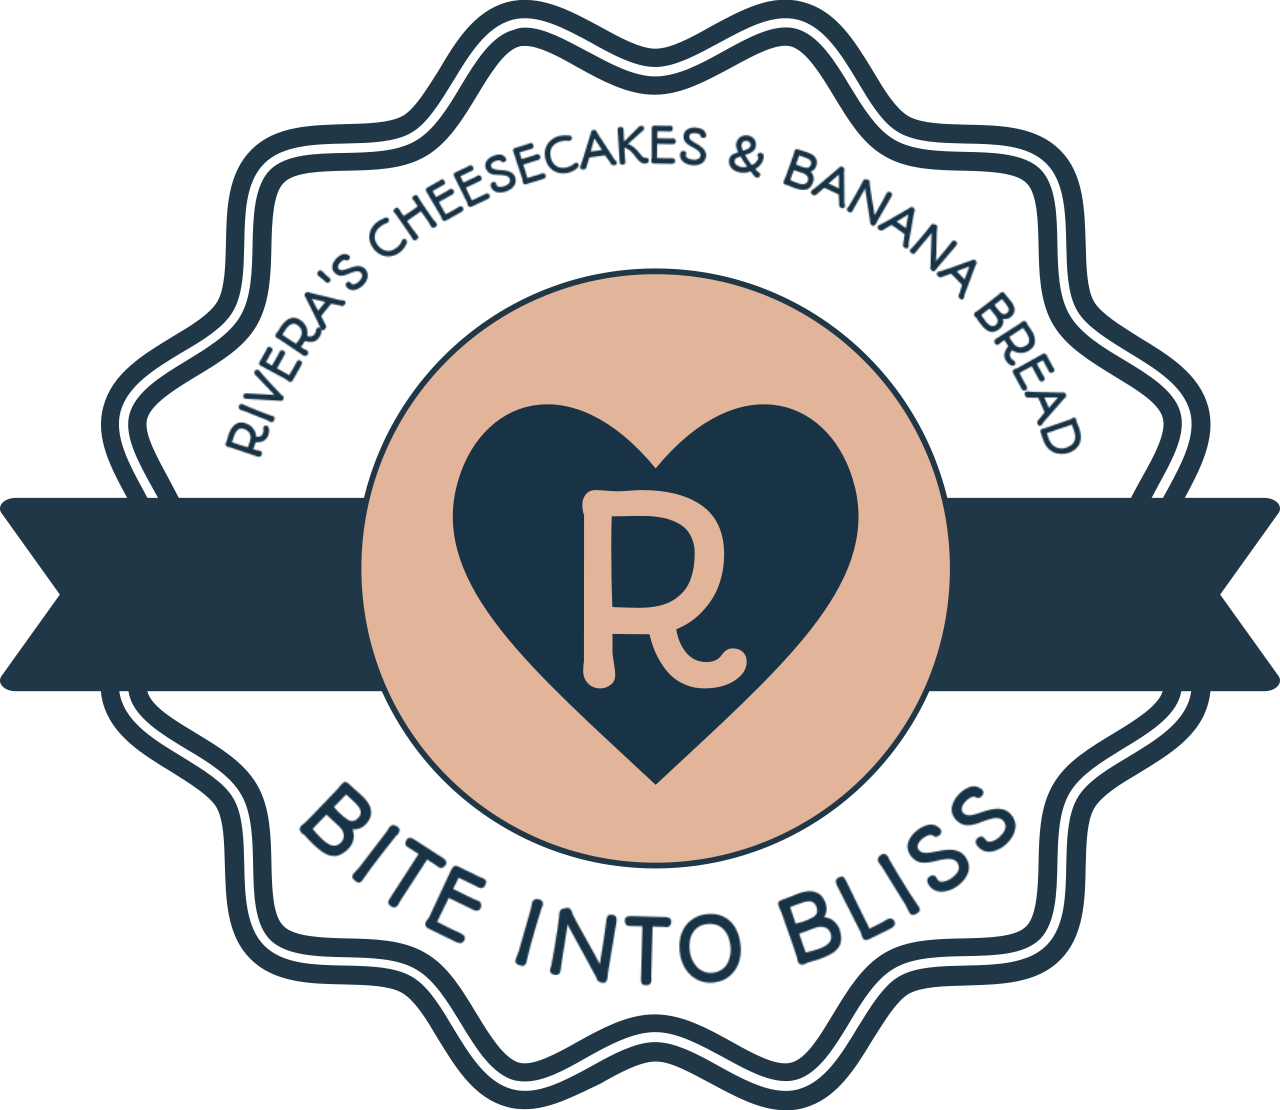 RIVERA'S CHEESECAKES & BANANA BREAD's logo